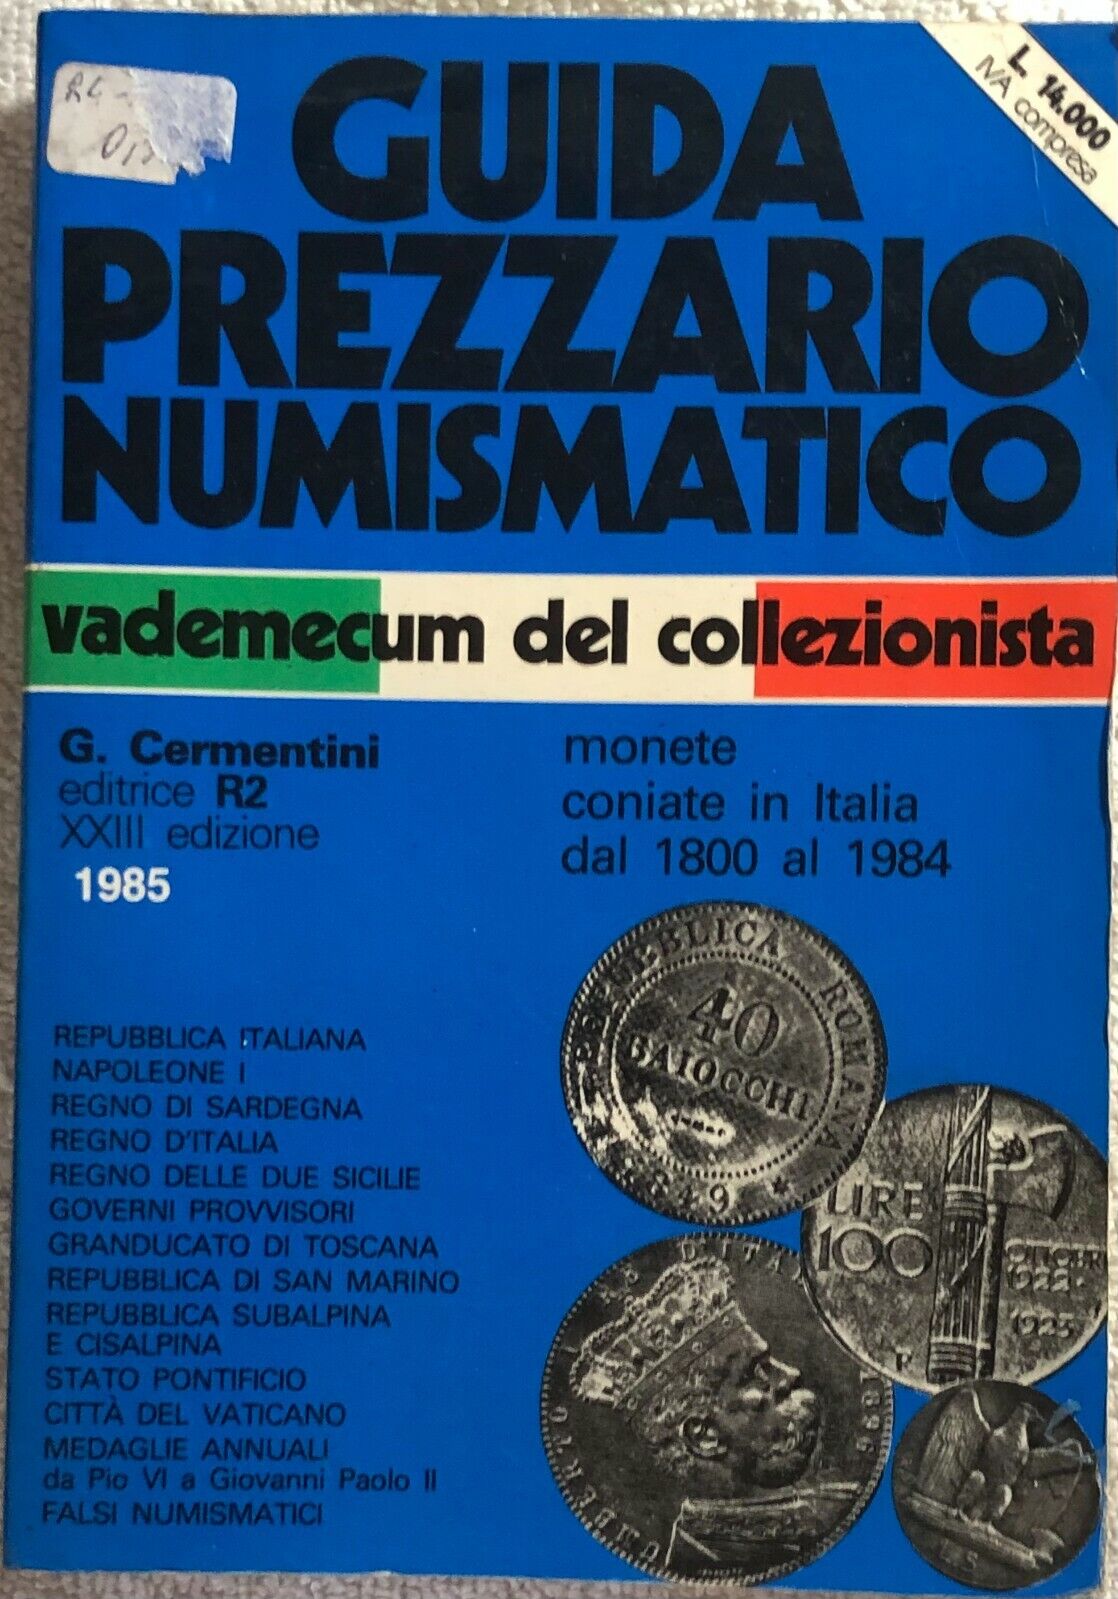 Guida prezziario numismatico di Aa.vv.,  1985,  G. Cermentini Editrice